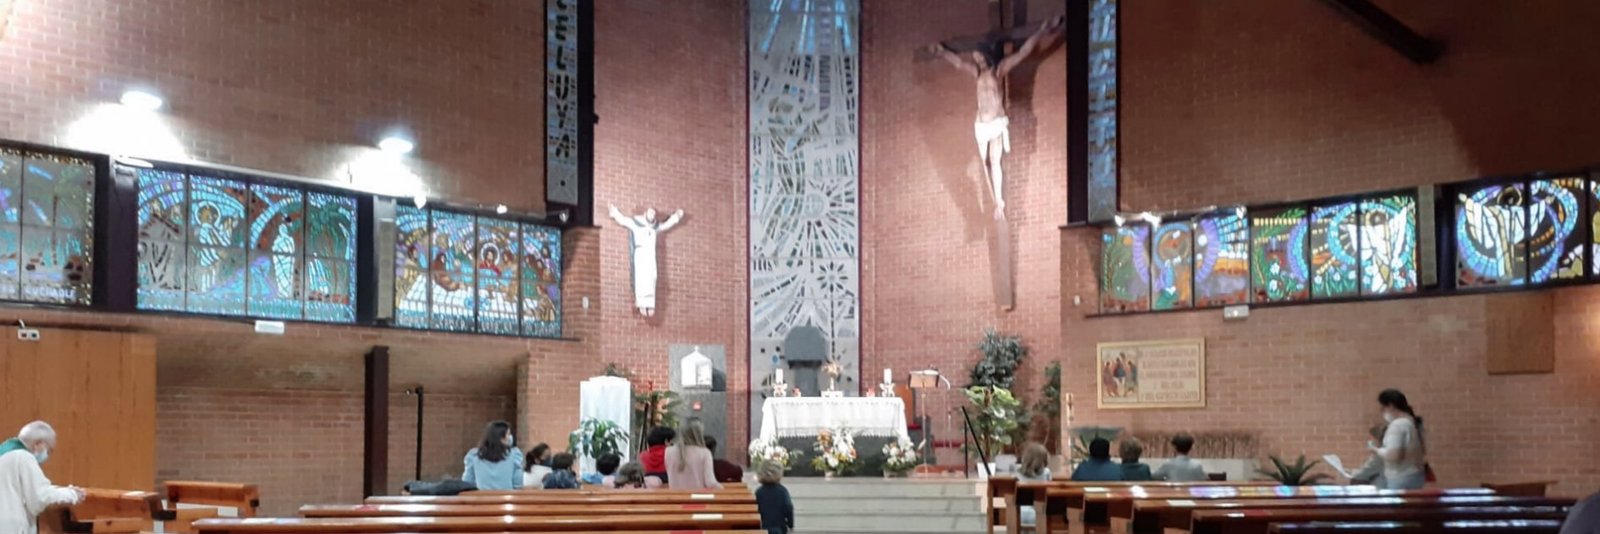 La parroquia madrileña de San Miguel de los Santos comienza un nuevo año pastoral